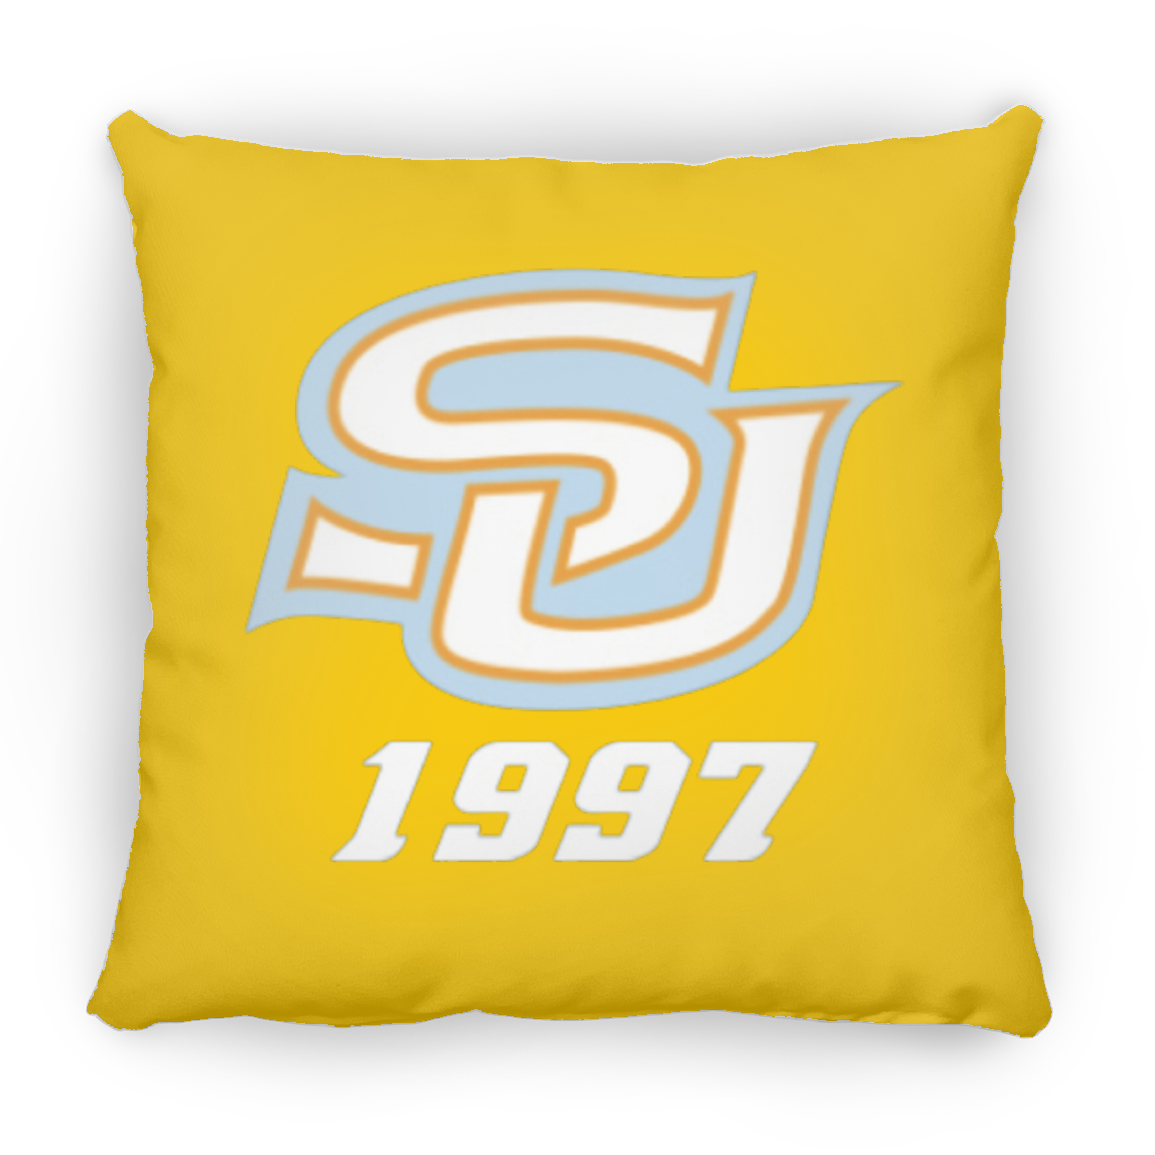 SU 1997 ZP14 Small Square Pillow